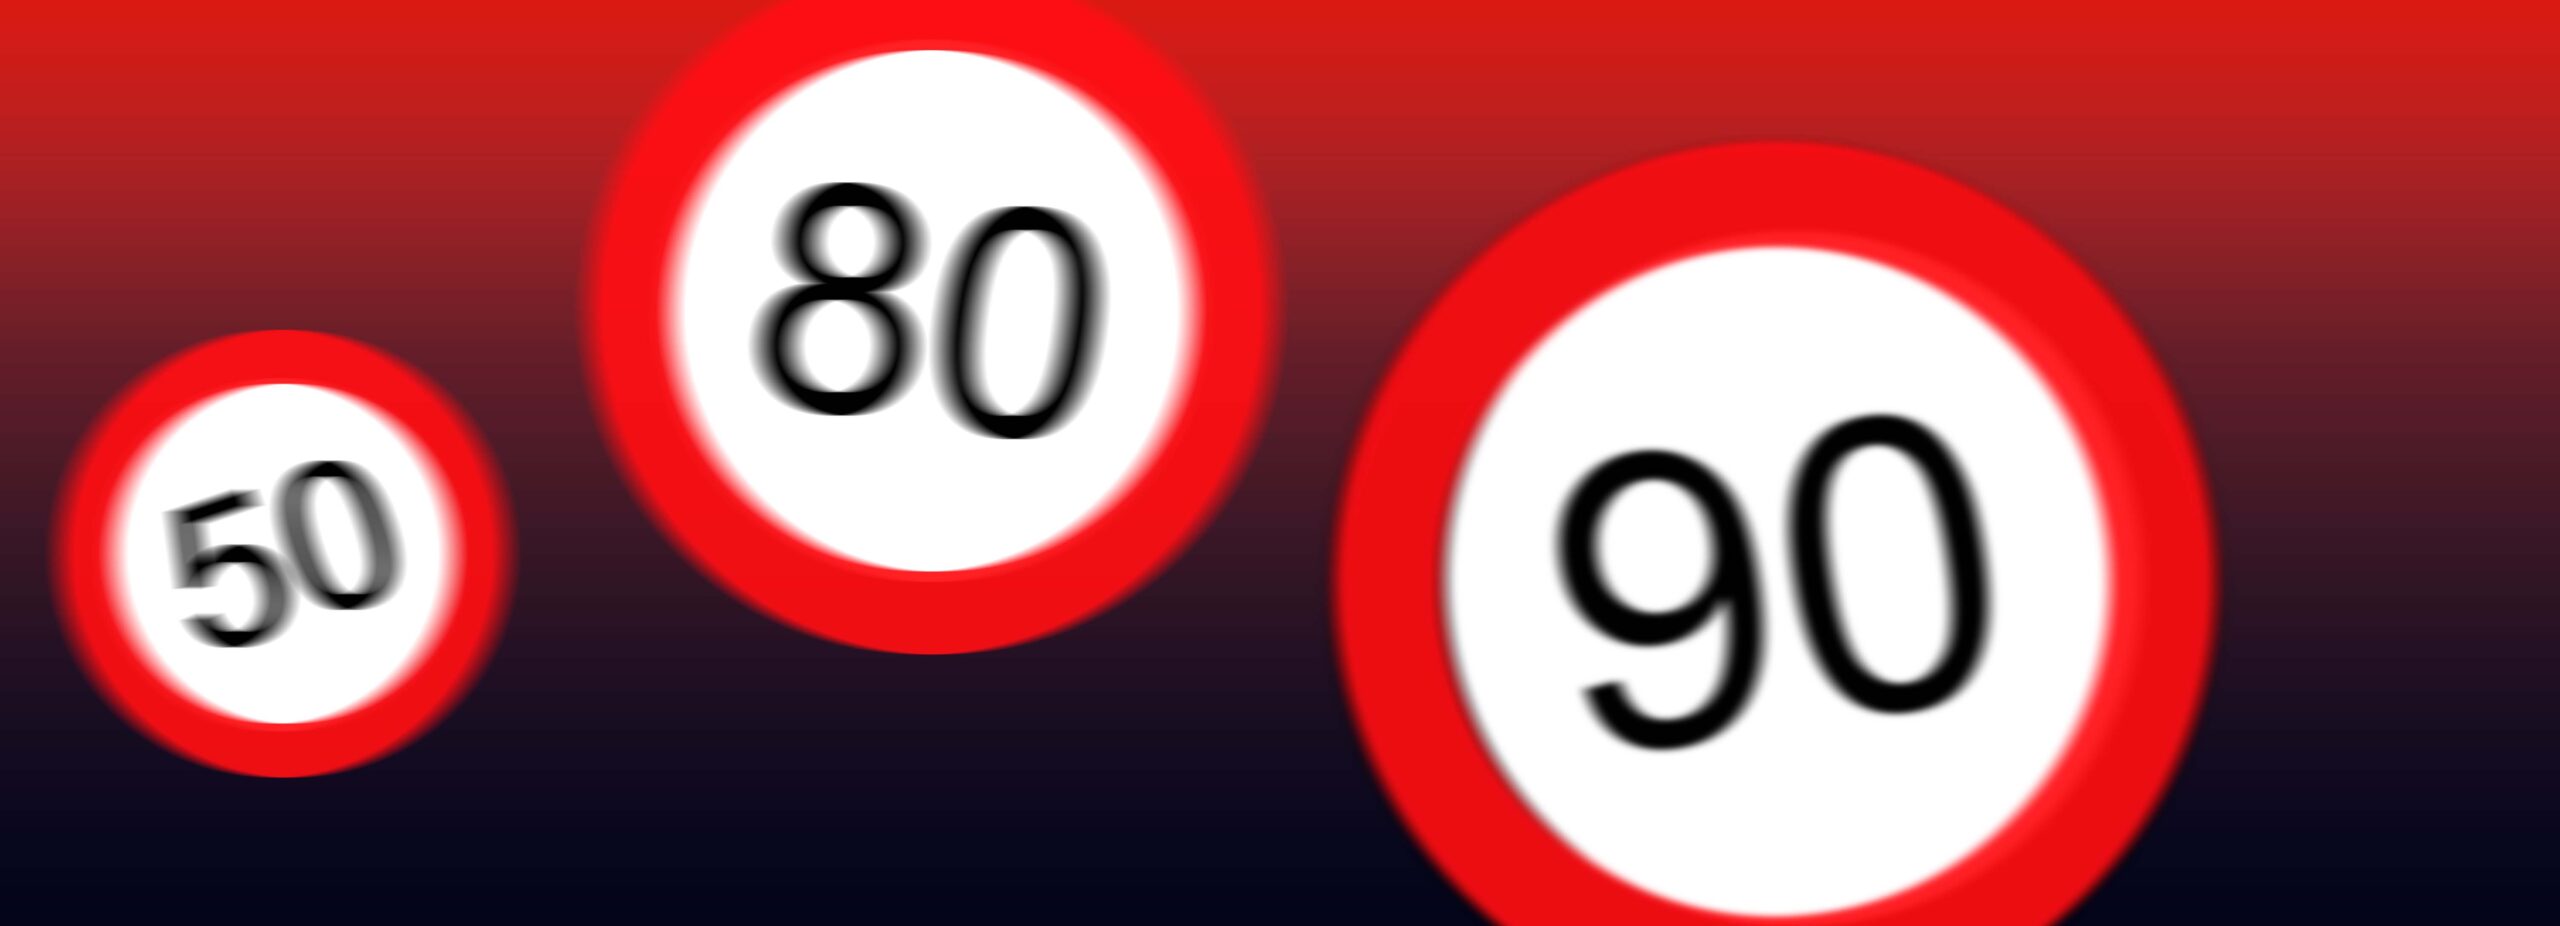 panneaux de limitations de vitesse 50, 80 et 90 km/h